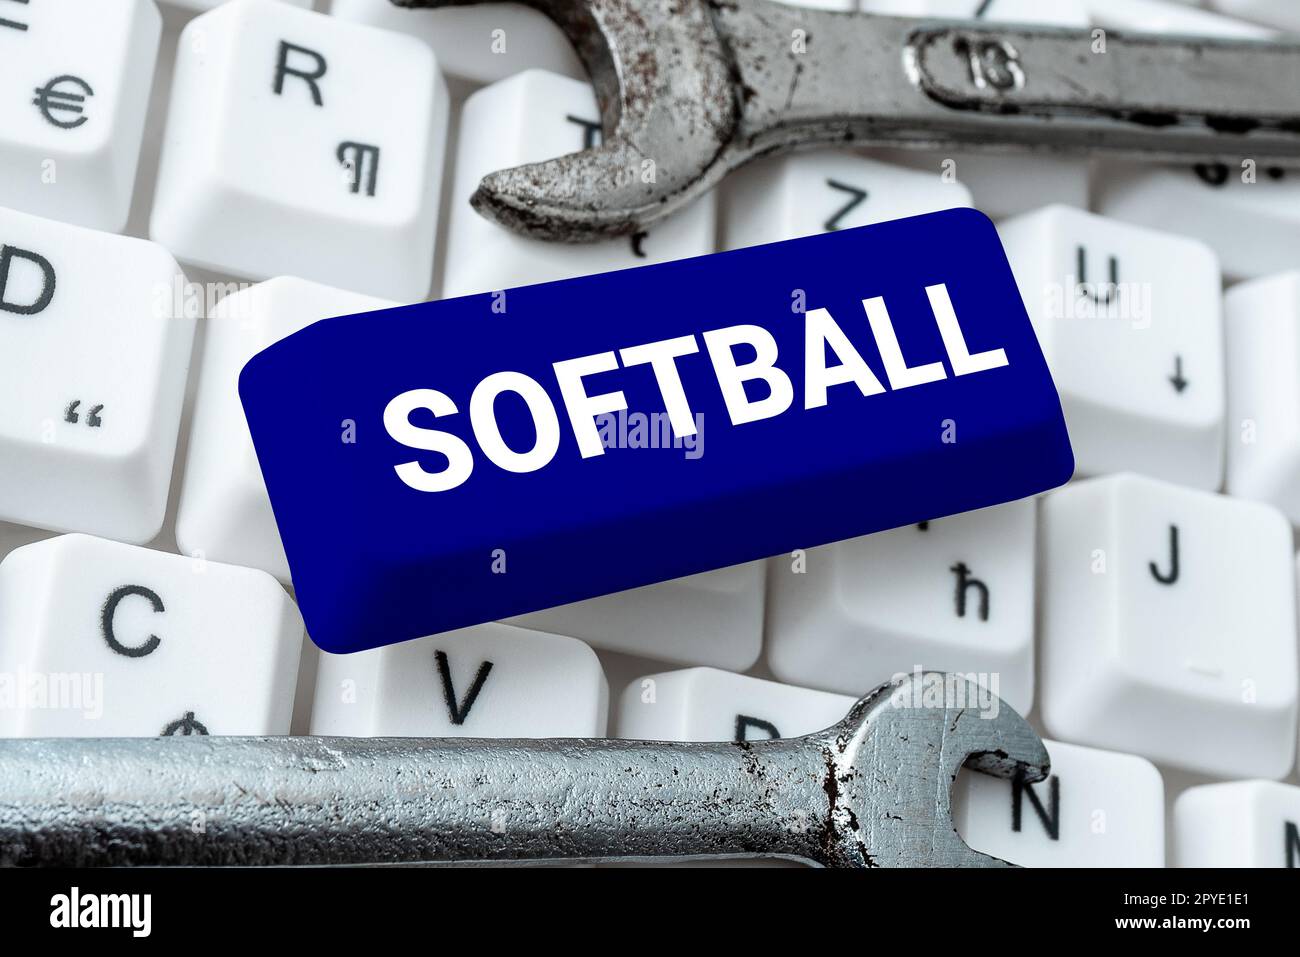 Softball de texte d'écriture. Concept signifiant un sport semblable au baseball joué avec une balle et une batte Banque D'Images